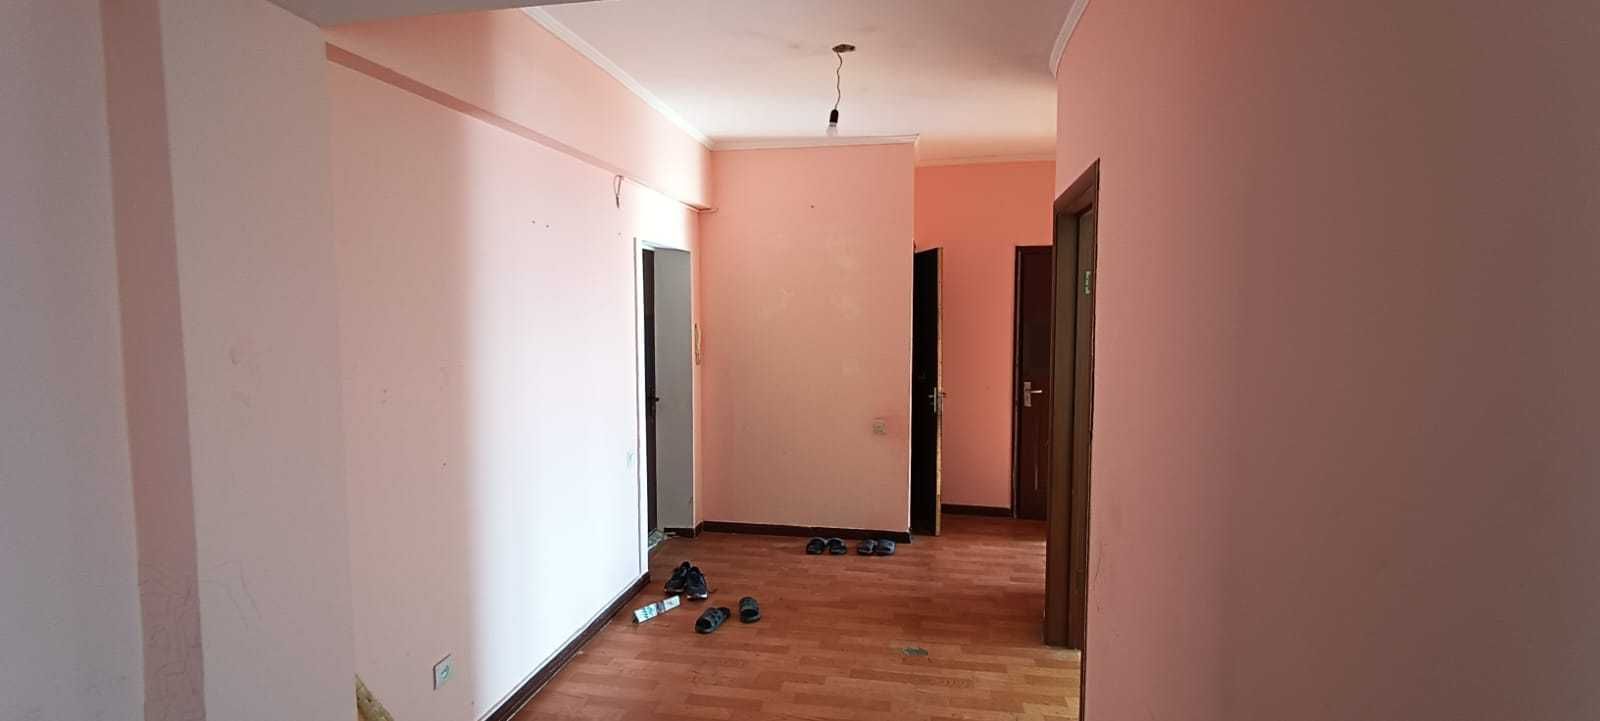 Двухкомнатная квартира улучшенной планировки в центре Талдыкоргана